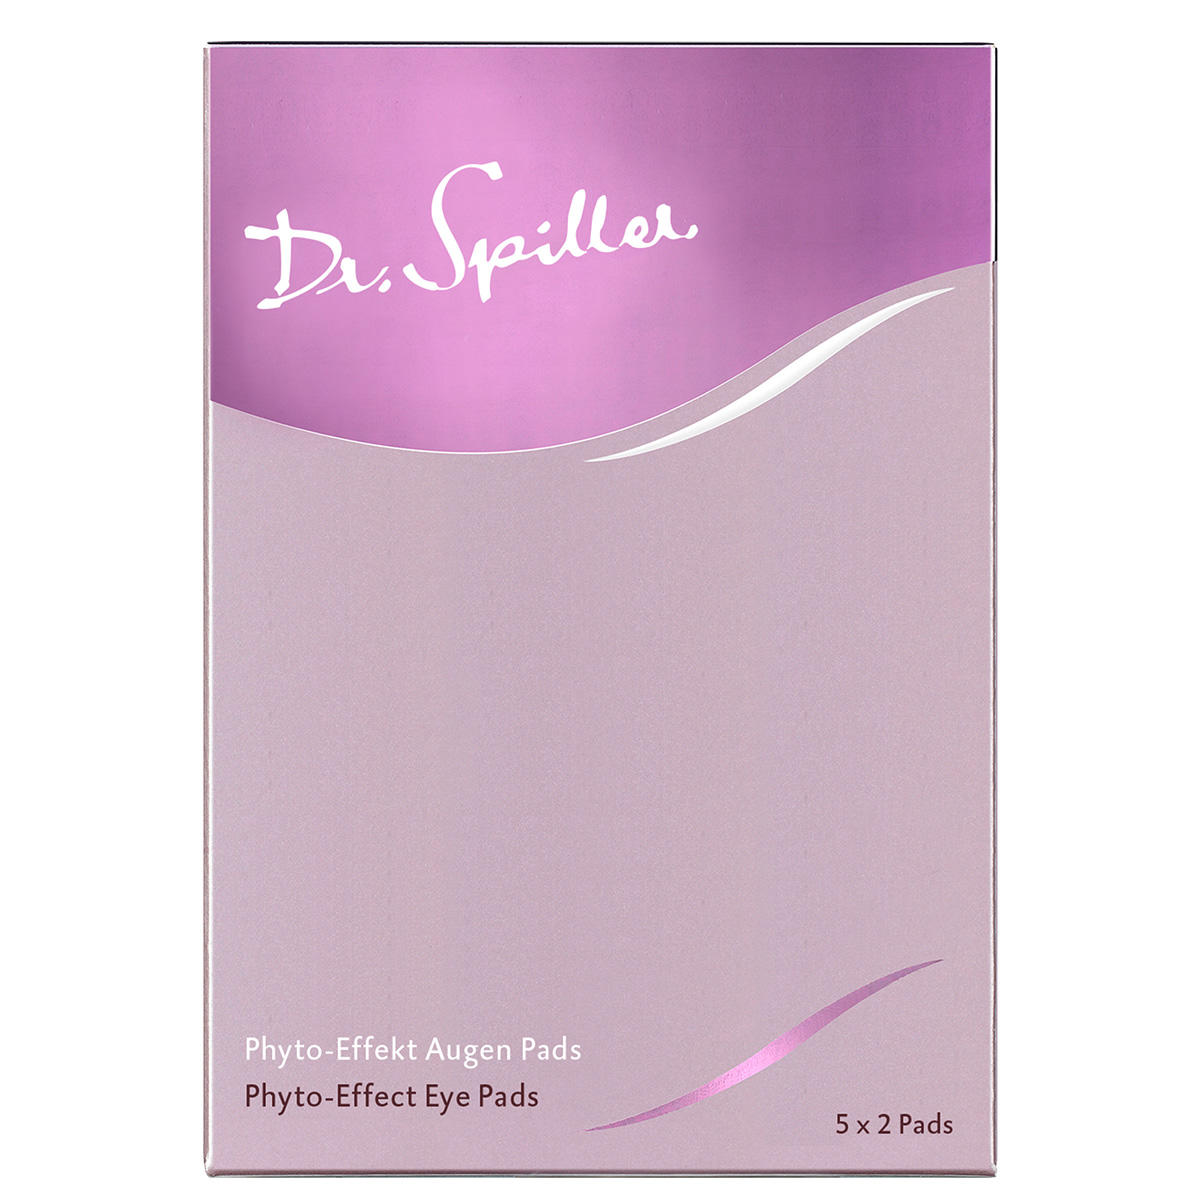 Dr. Spiller Phyto-Effekt Augen Pads 10 Stück - 3